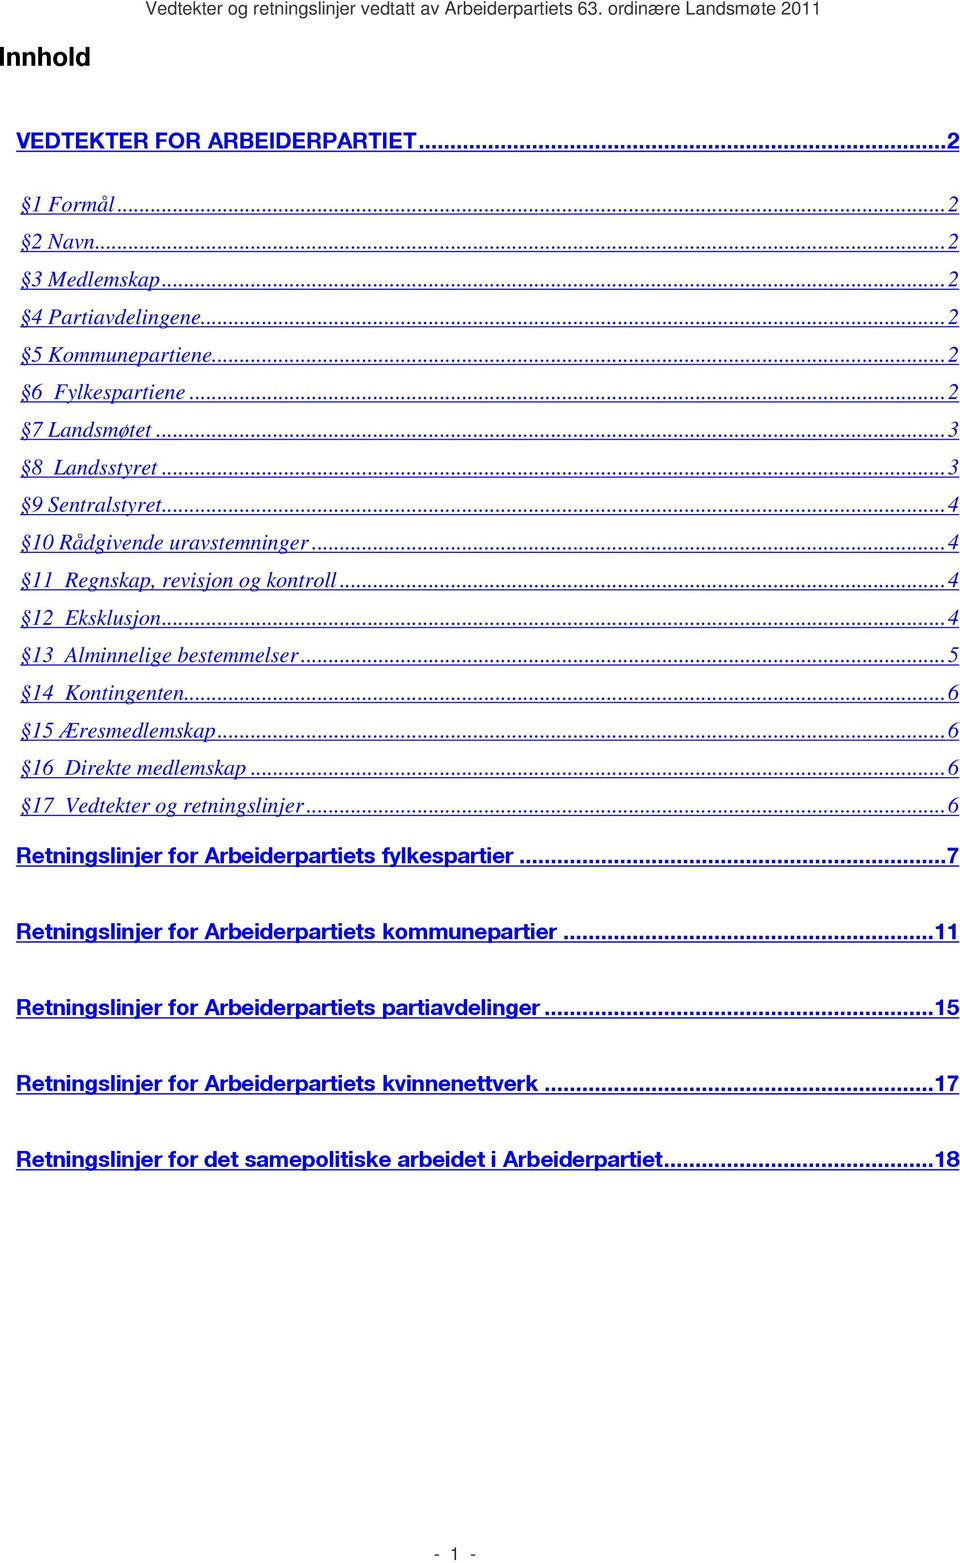 ..6 16 Direkte medlemskap...6 17 Vedtekter og retningslinjer...6 Retningslinjer for Arbeiderpartiets fylkespartier...7 Retningslinjer for Arbeiderpartiets kommunepartier.